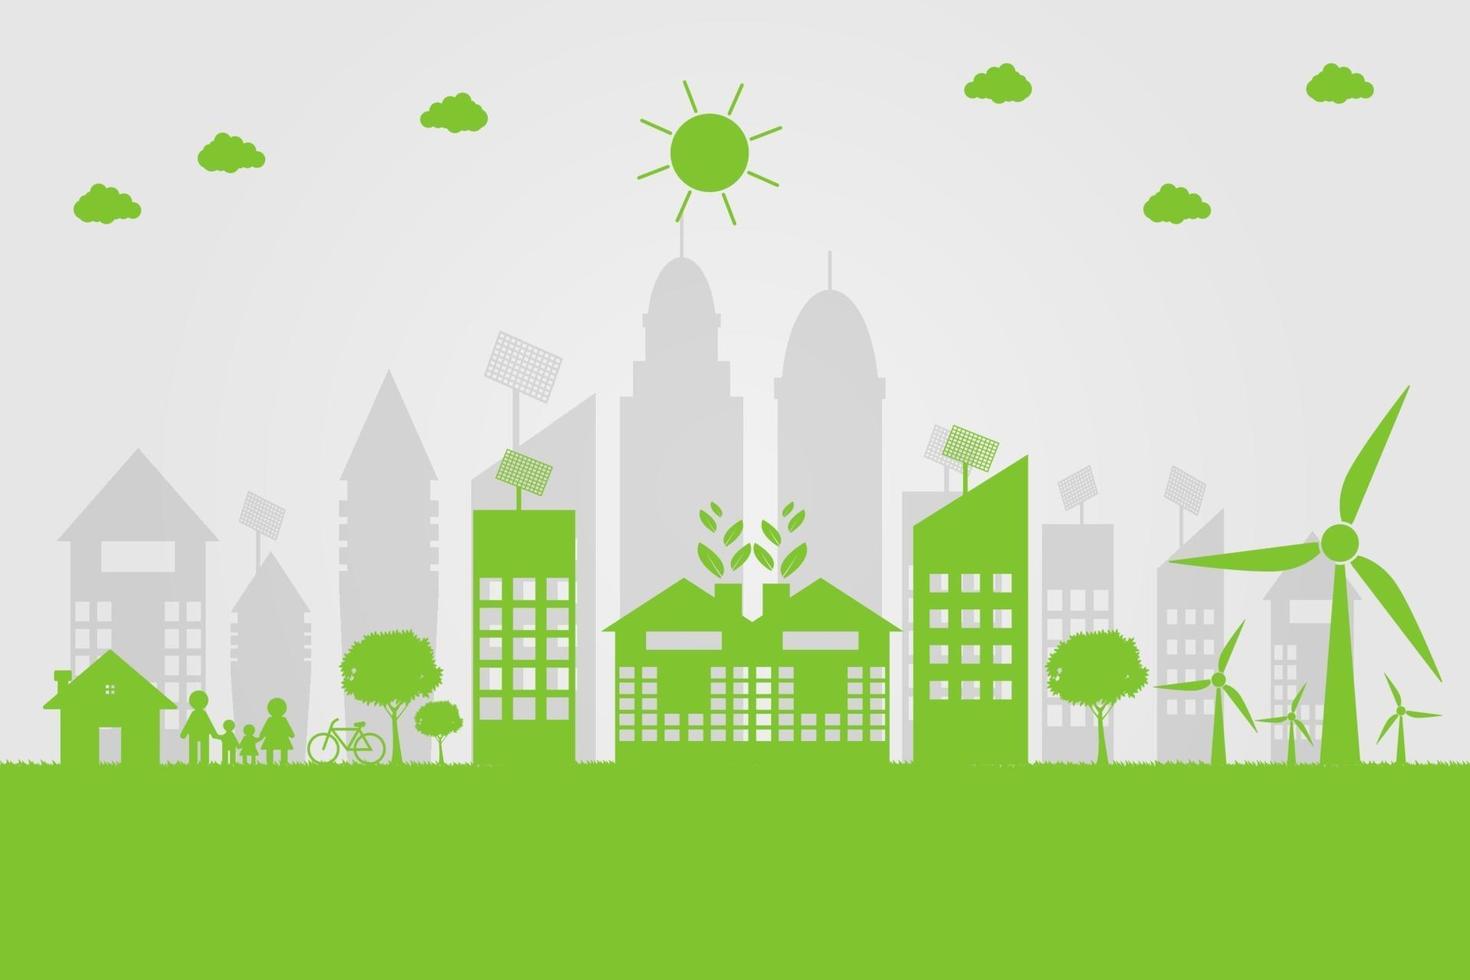 groene steden helpen de wereld met milieuvriendelijke conceptideeën. vector illustratie